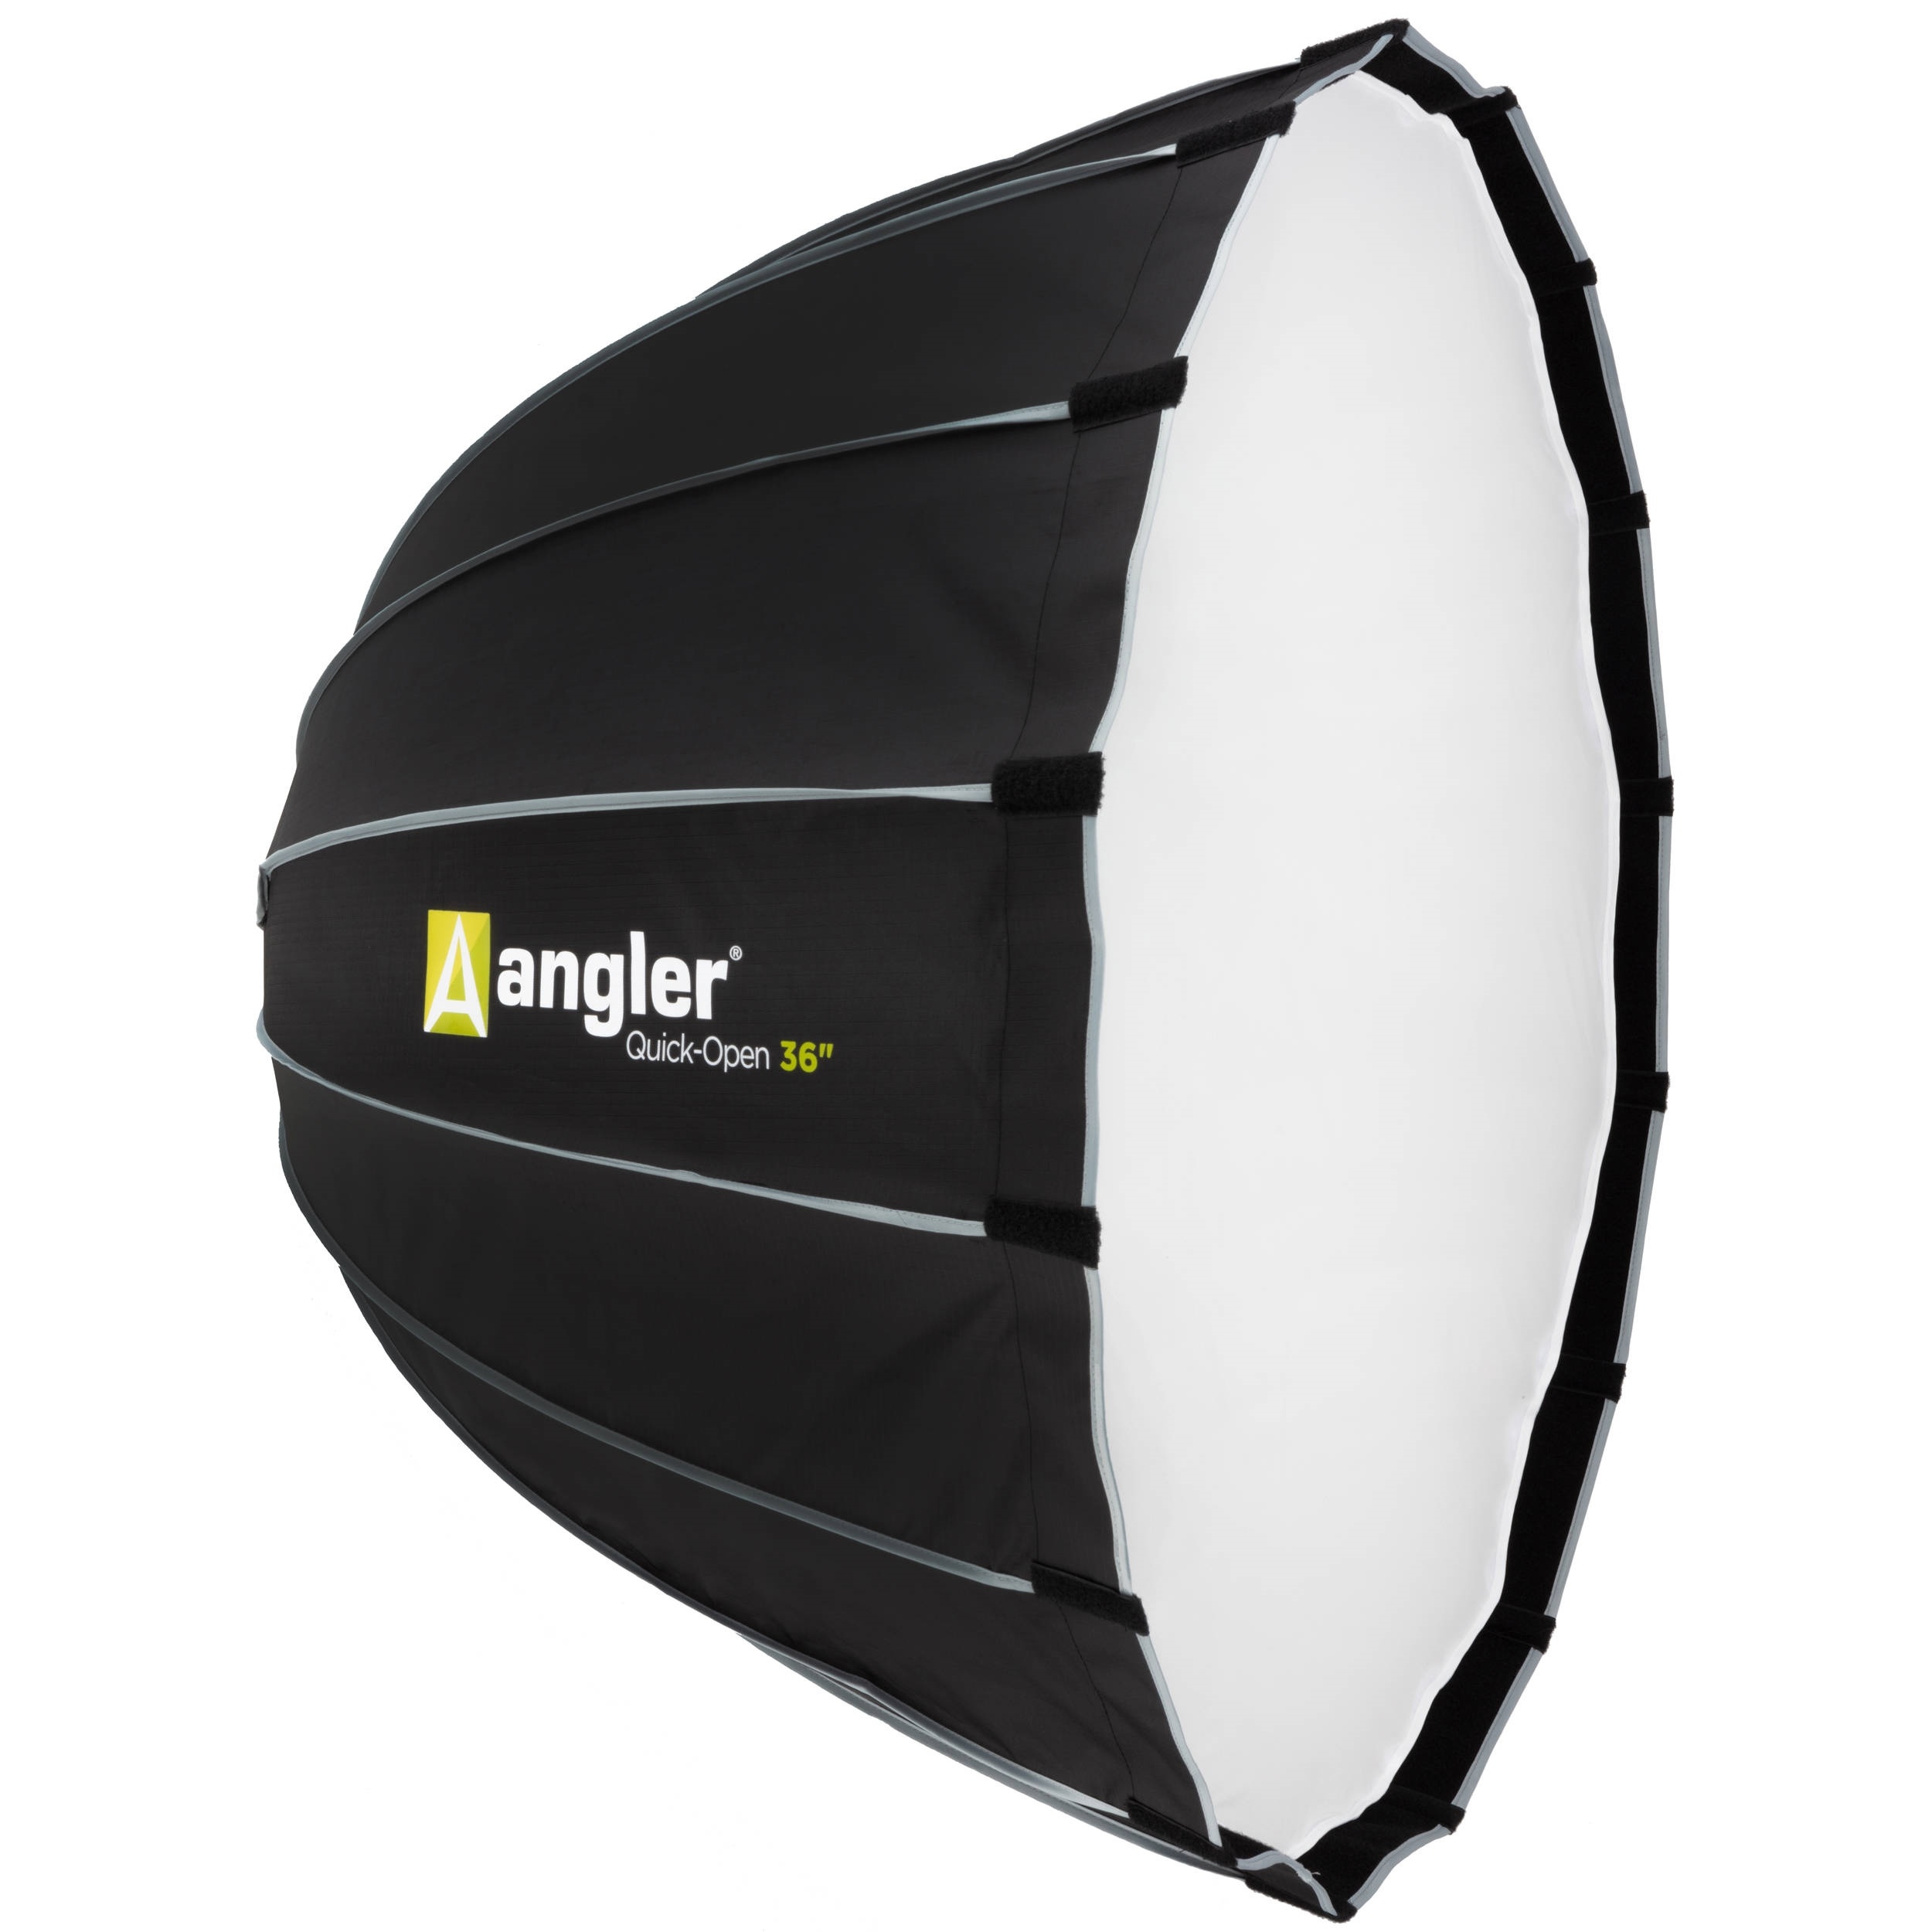 Angler Quick-Open Deep Parabolic Softbox (91.4cm)